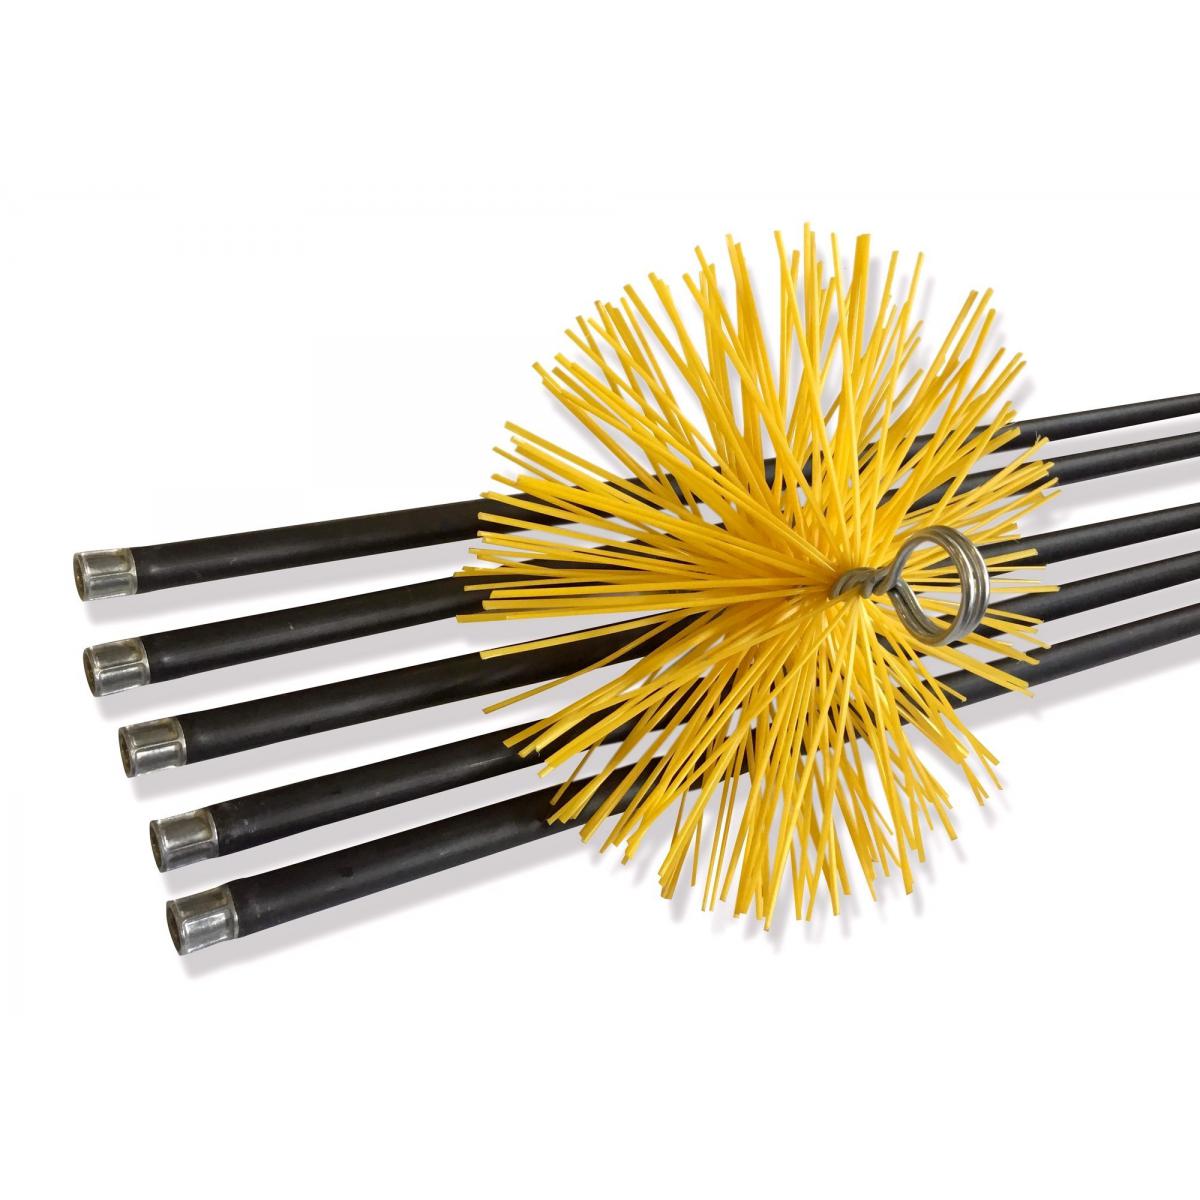 Kibros - Kit de ramonage conduits gainés | Brosse hérisson synthétique | Diamètre 180 mm - Accessoires de radiateur électrique